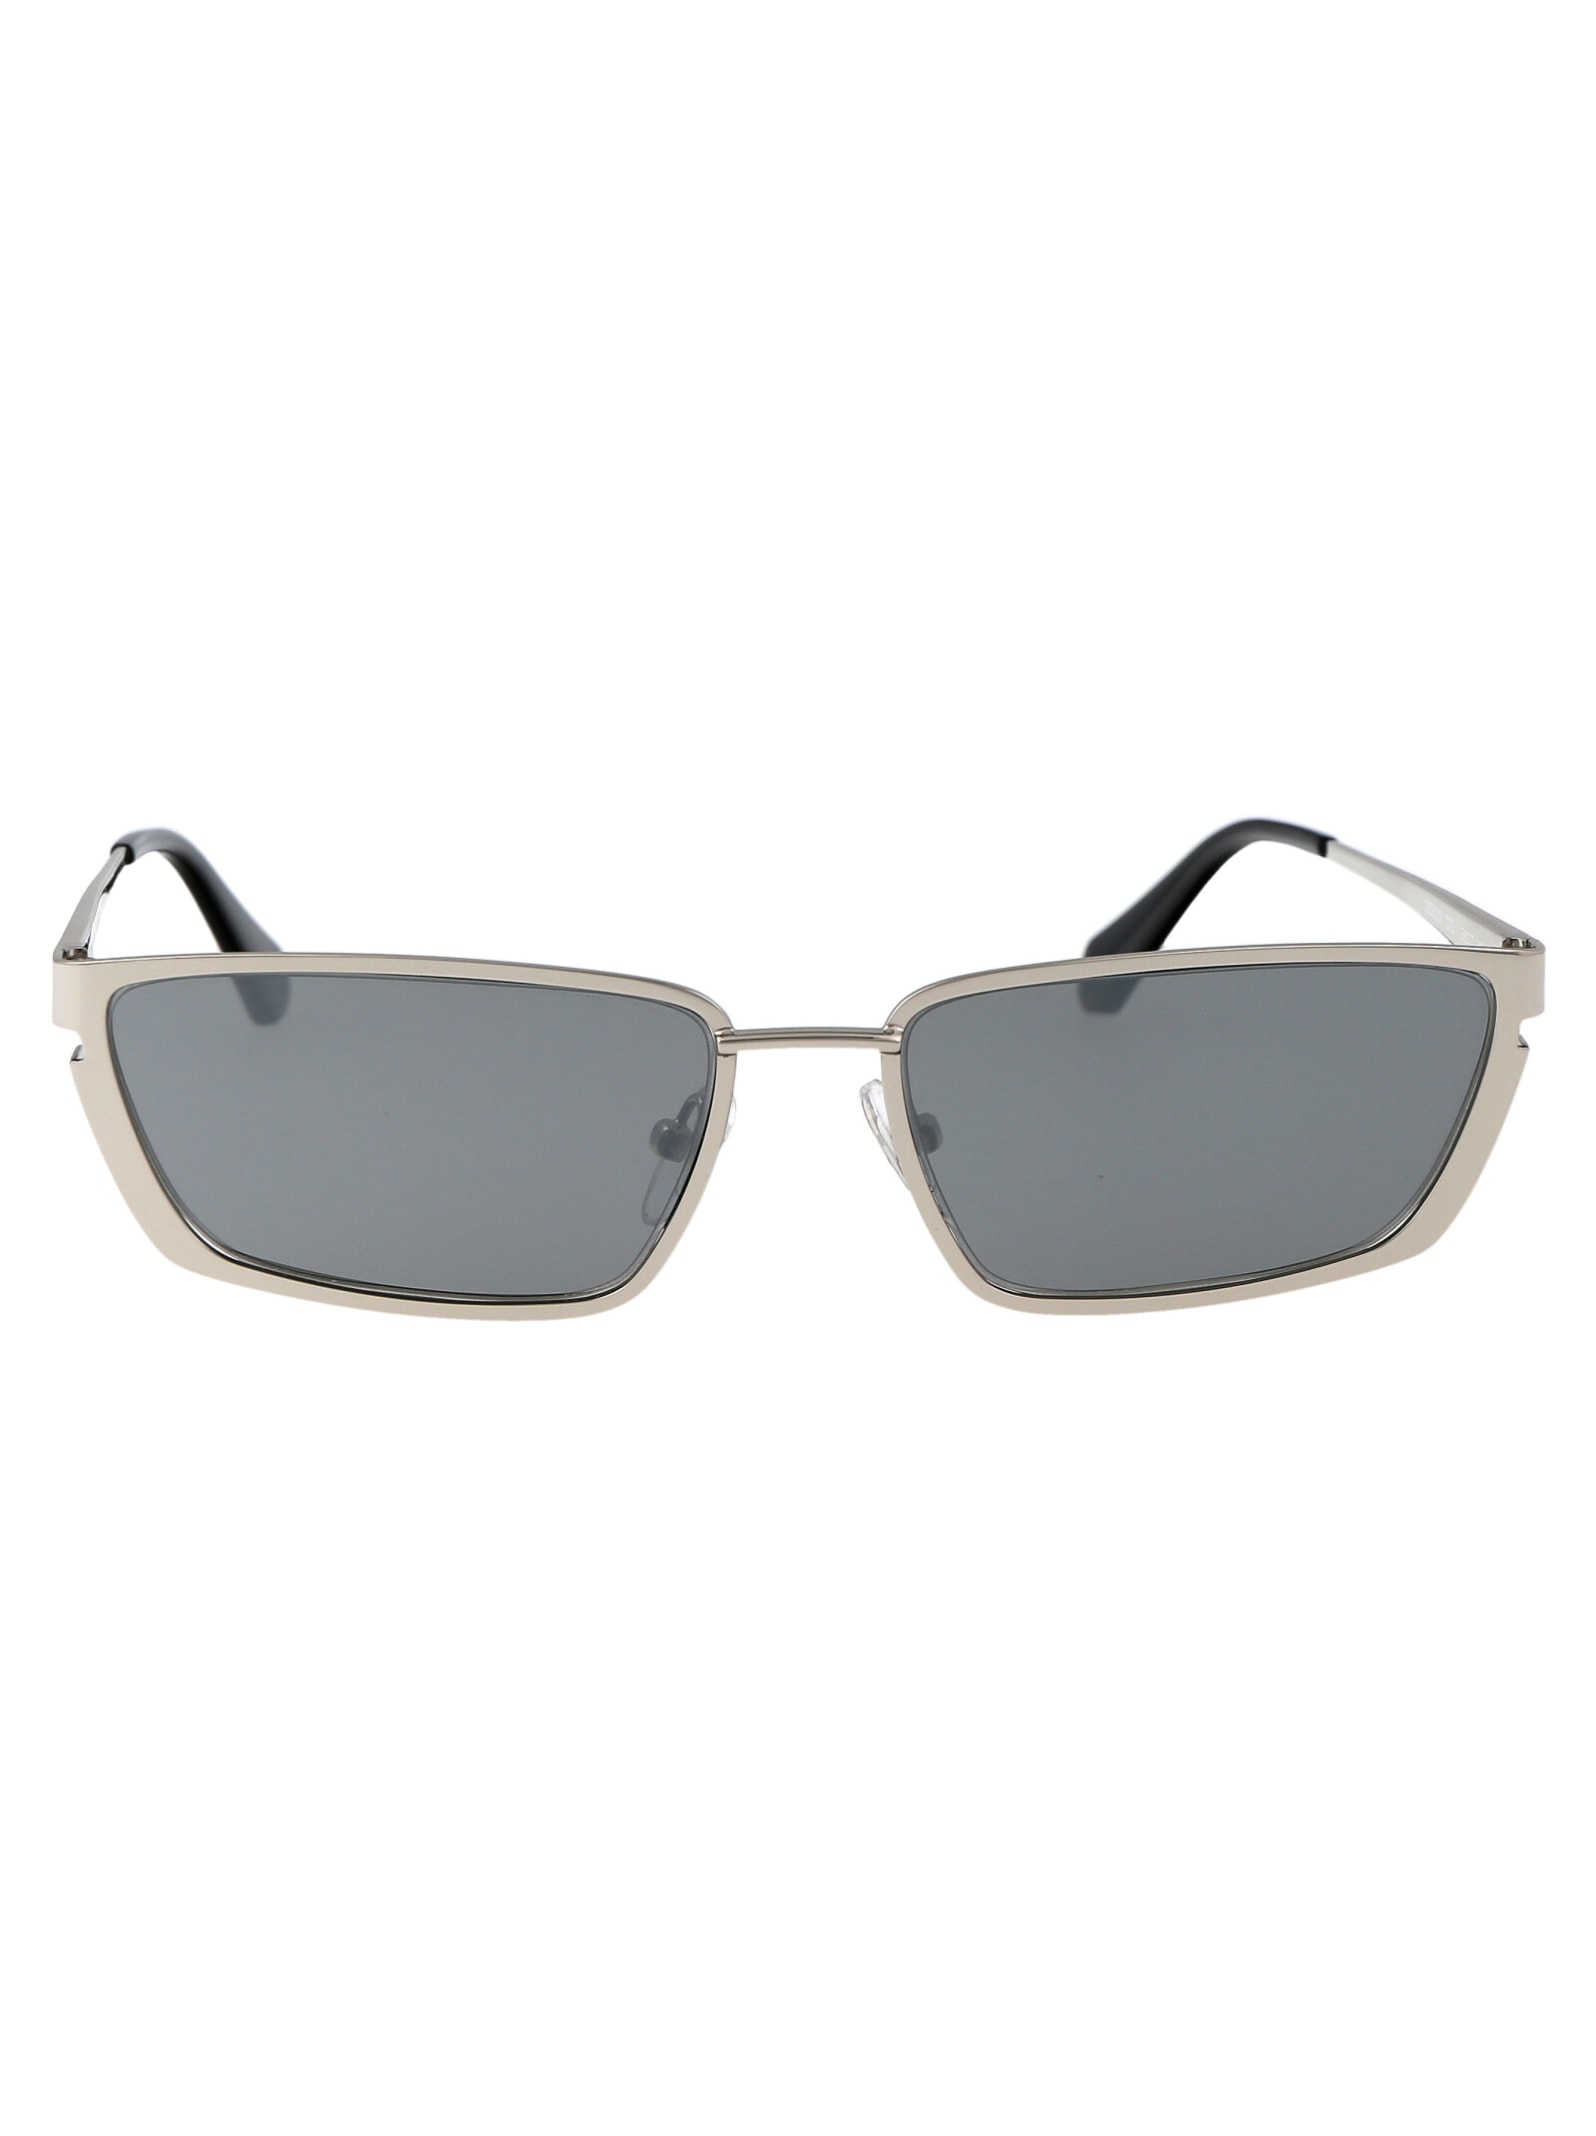 Off-white Richfield Sunglasses In 7272 Silver Silver